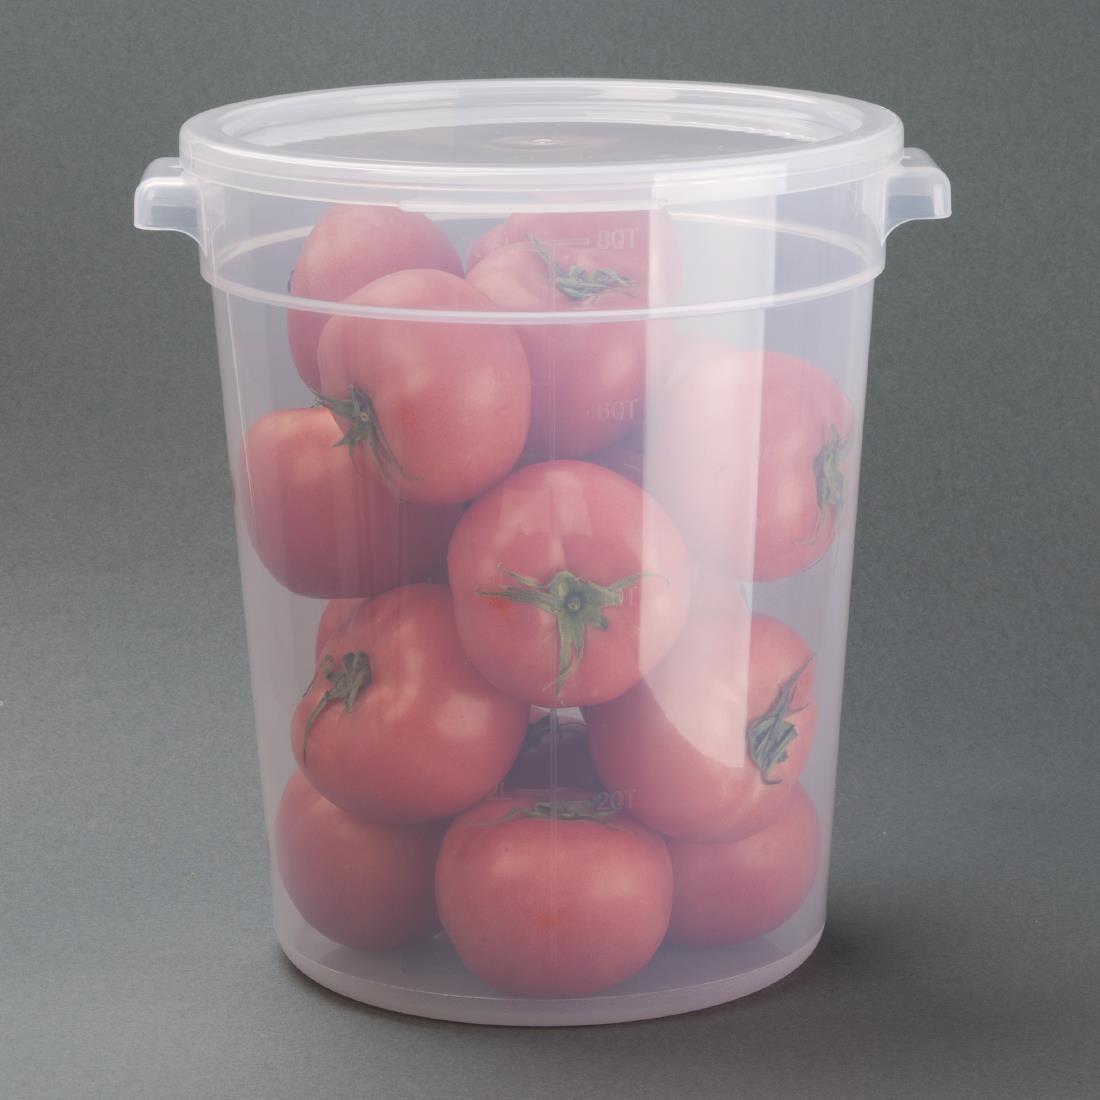 Vogue Polypropylene Round Food Storage Container 7.5Ltr - DJ960  - 7